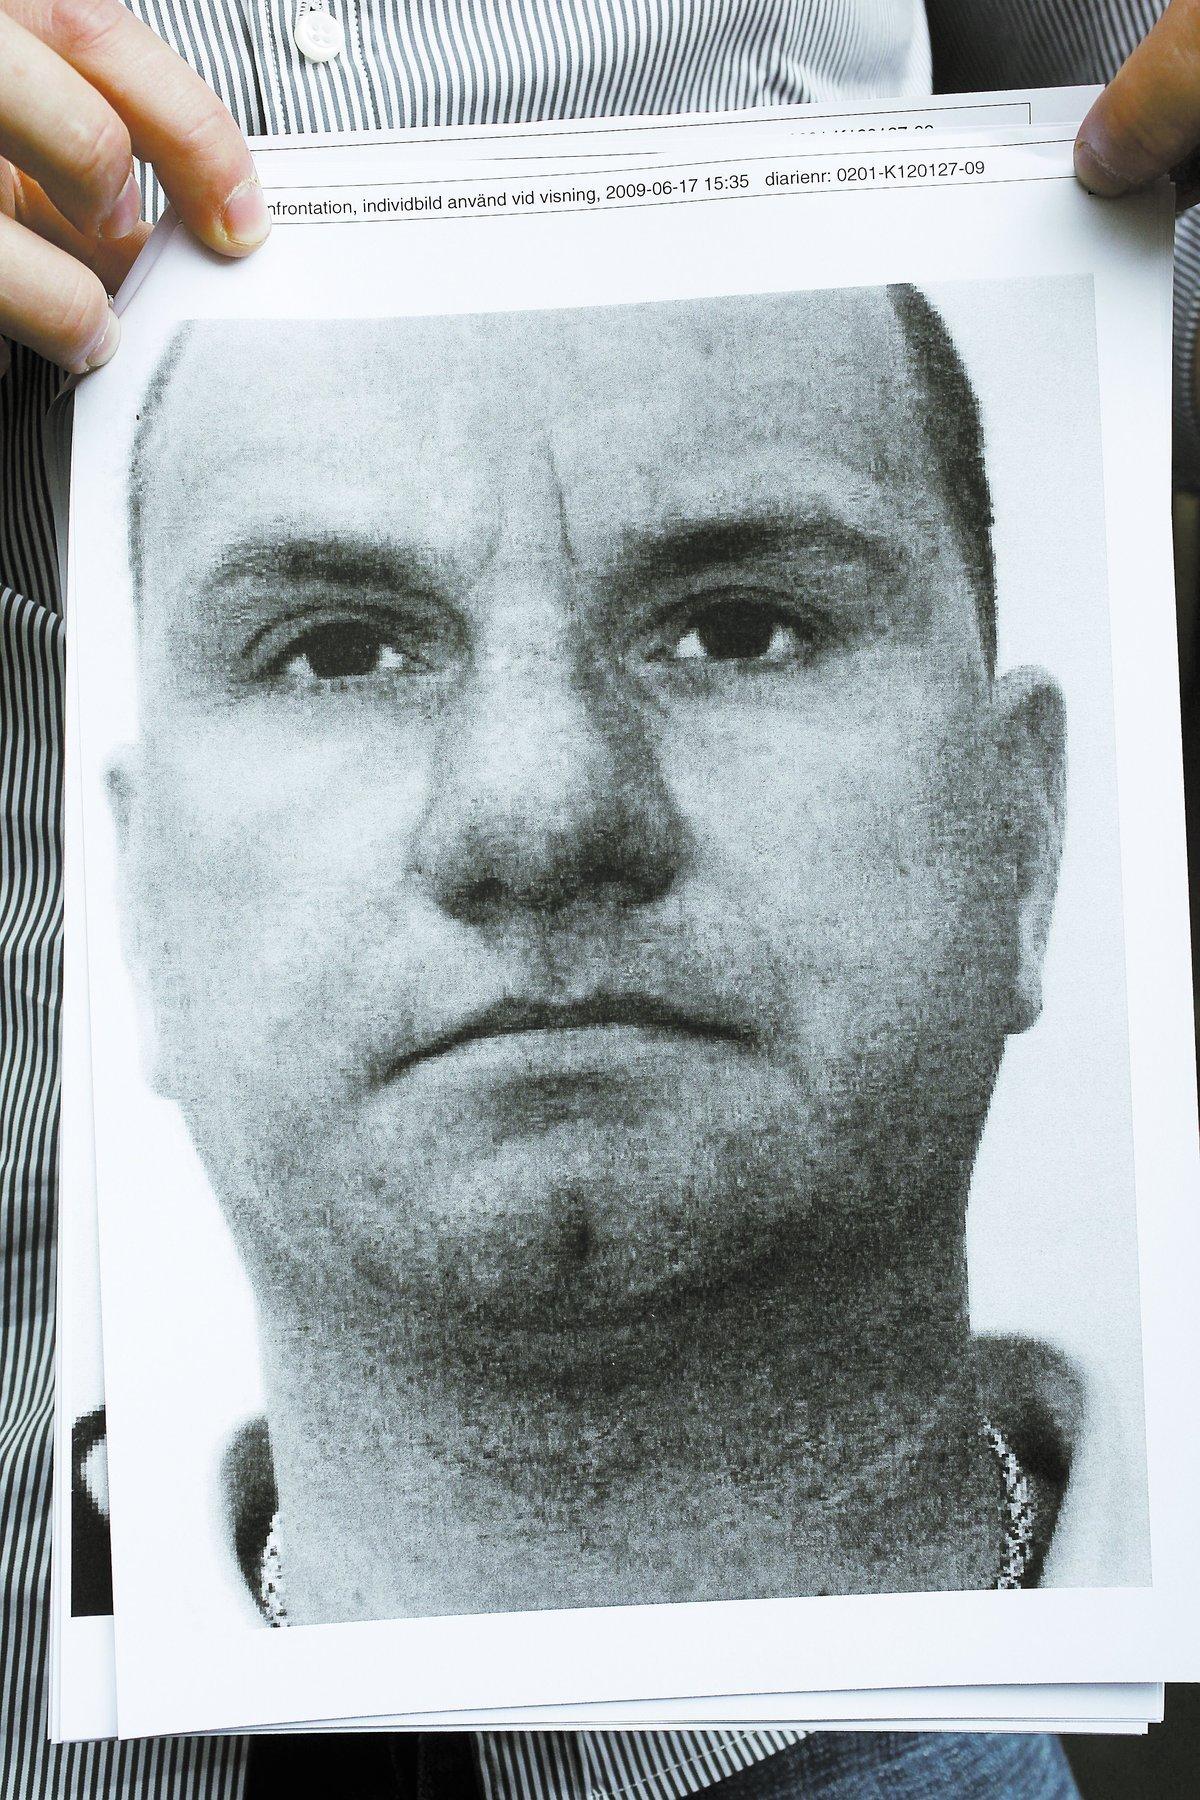 erkänner Håkan Hedning, 41, har tidigare dömts för flera våldsbrott. 1997 åkte Hedning in på sex år för grovt rån. 2003 dömdes han för medhjälp till grovt rån.